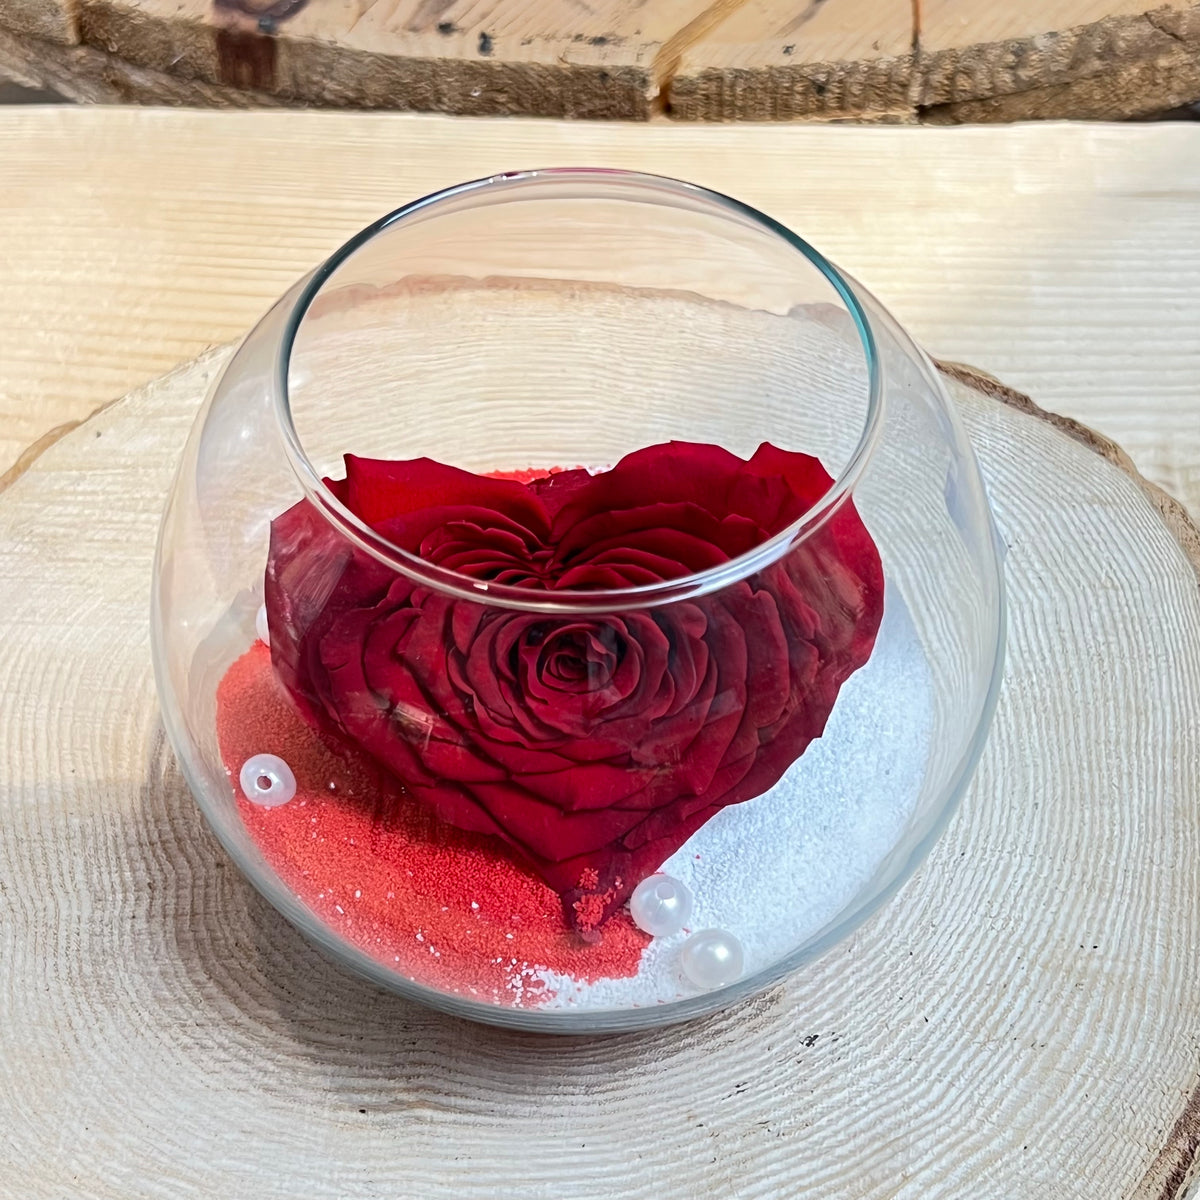 Rosa stabilizzata: Rosa con cubo di vetro e sabbia — Fioreria Idea